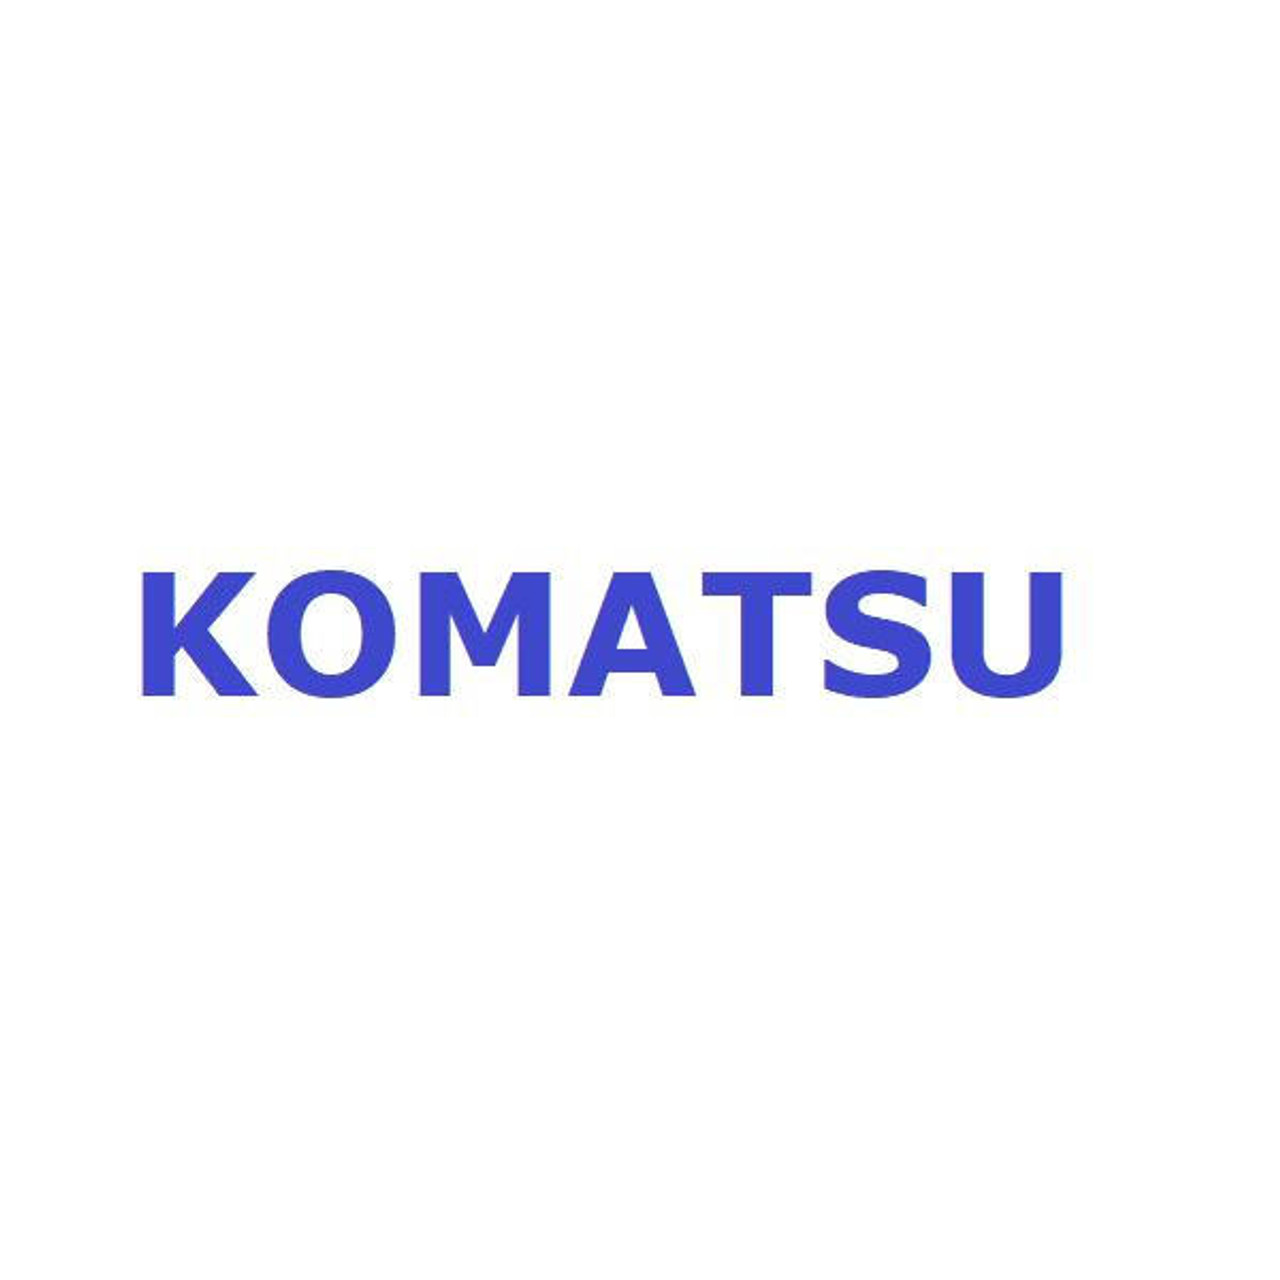 Komatsu Seal # 56D-50-14103K Seal Kit